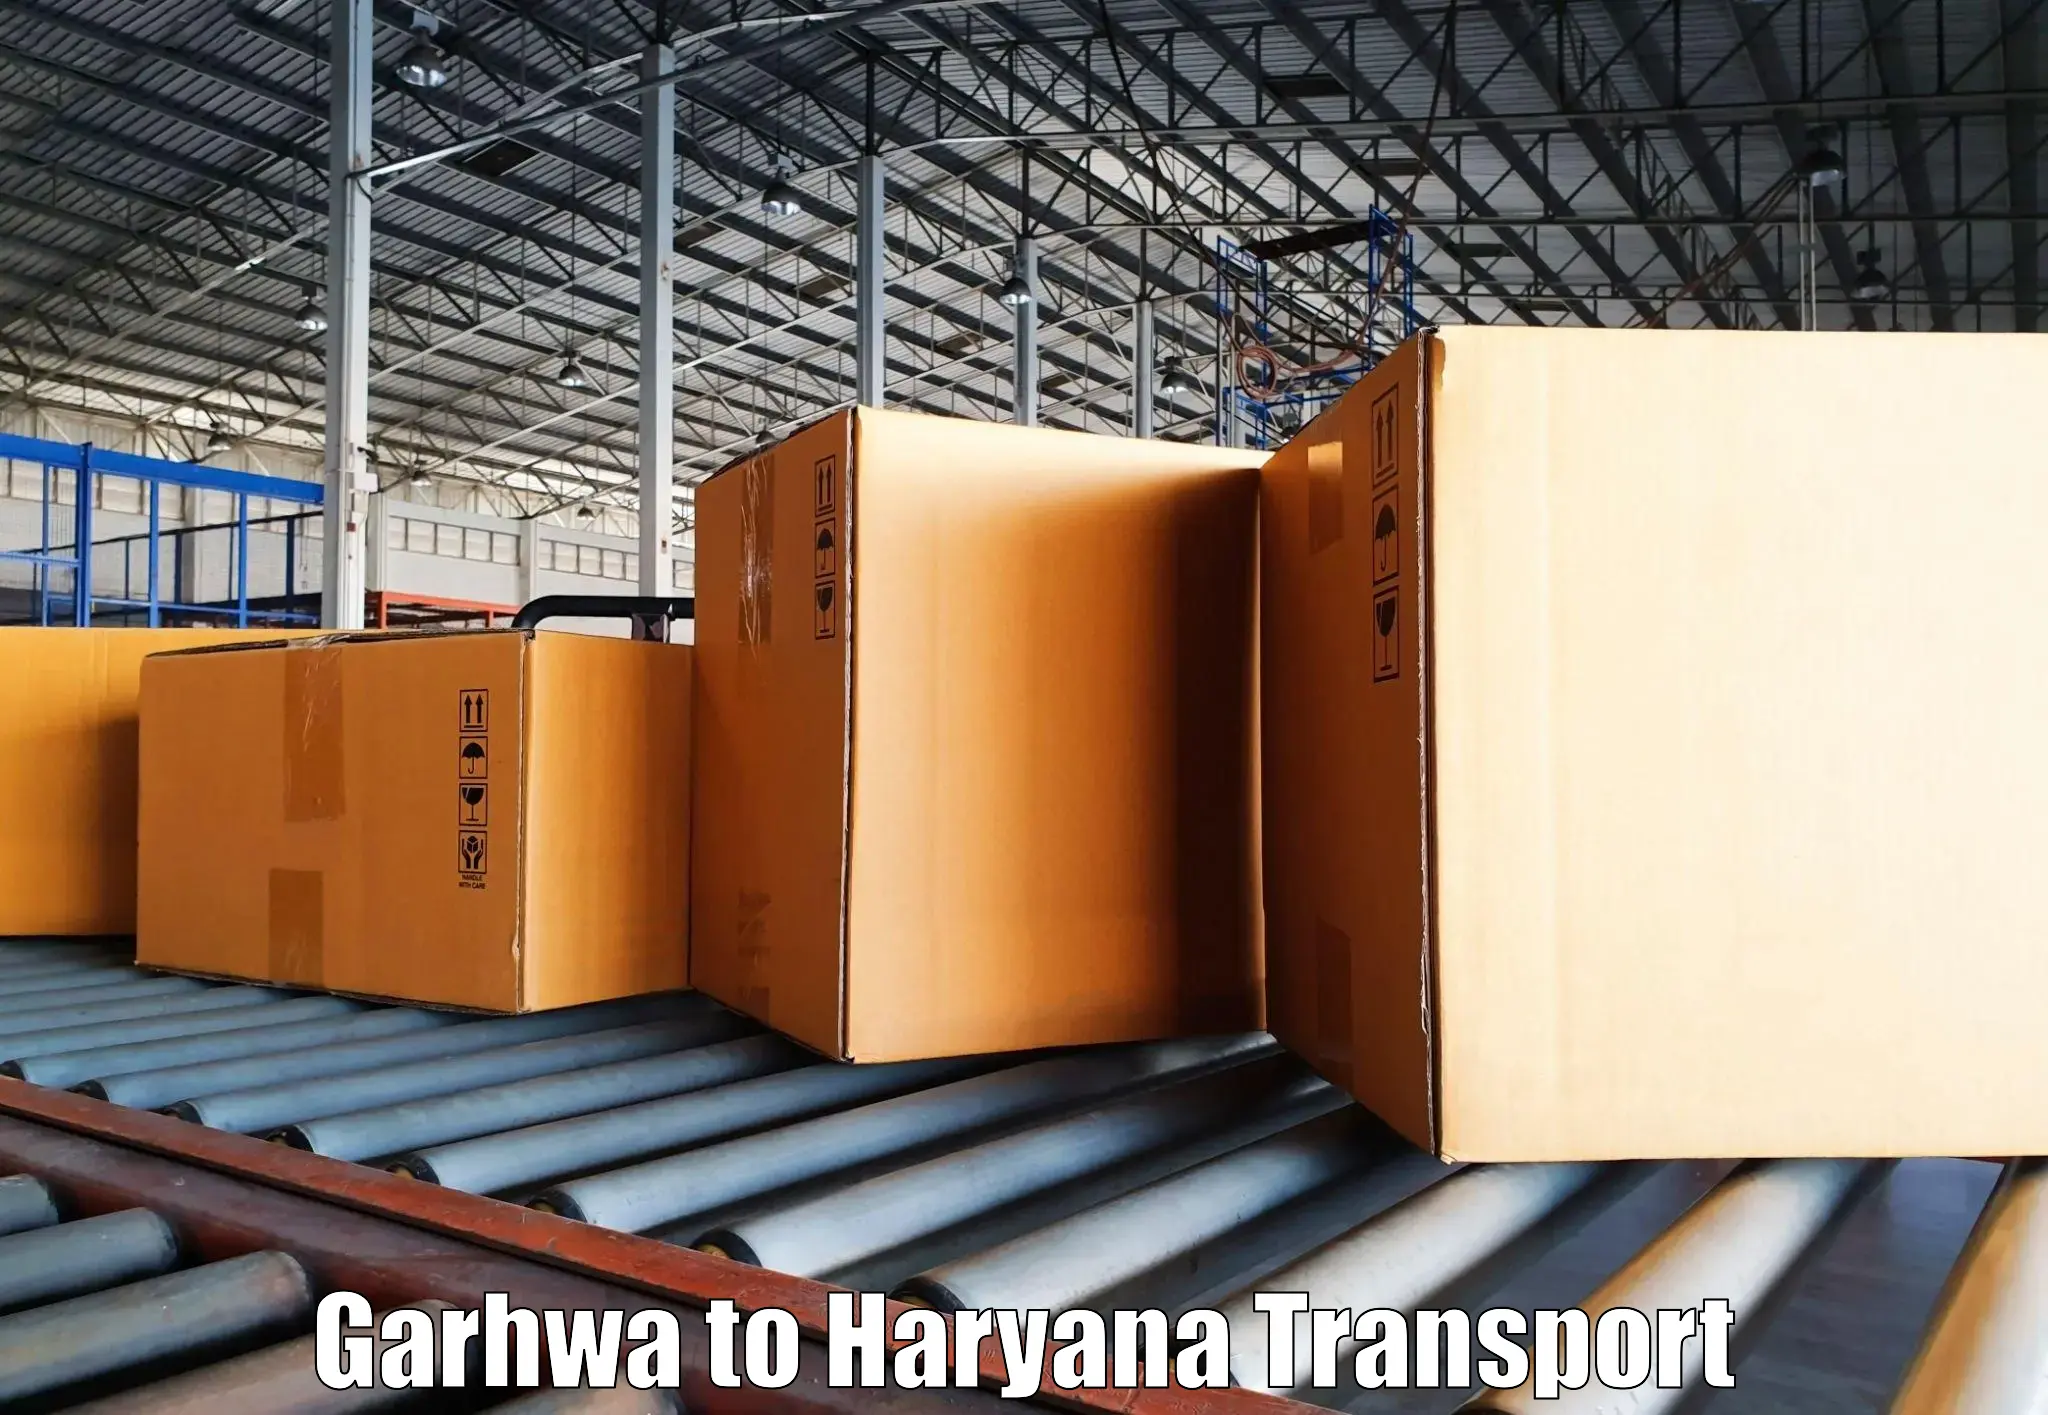 Shipping partner Garhwa to Odhan